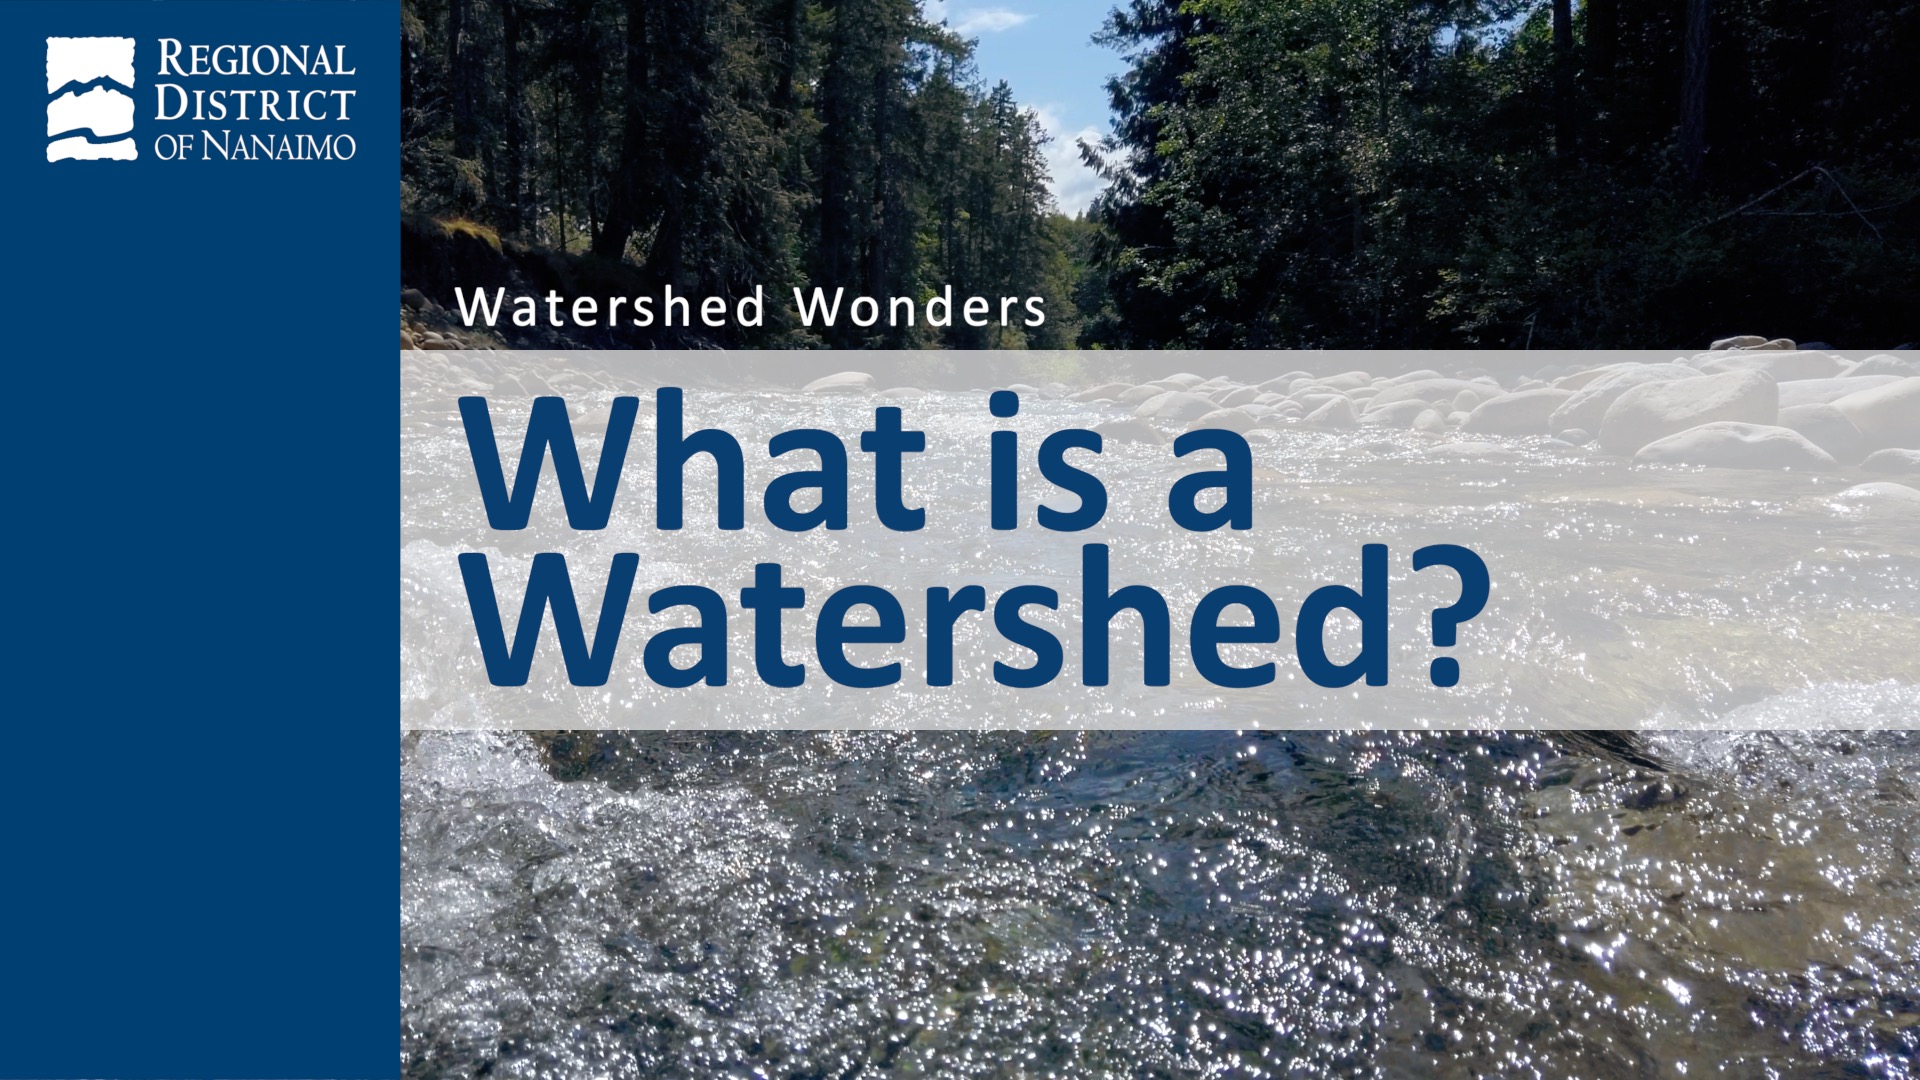 Video 1 - Watershed Wonders